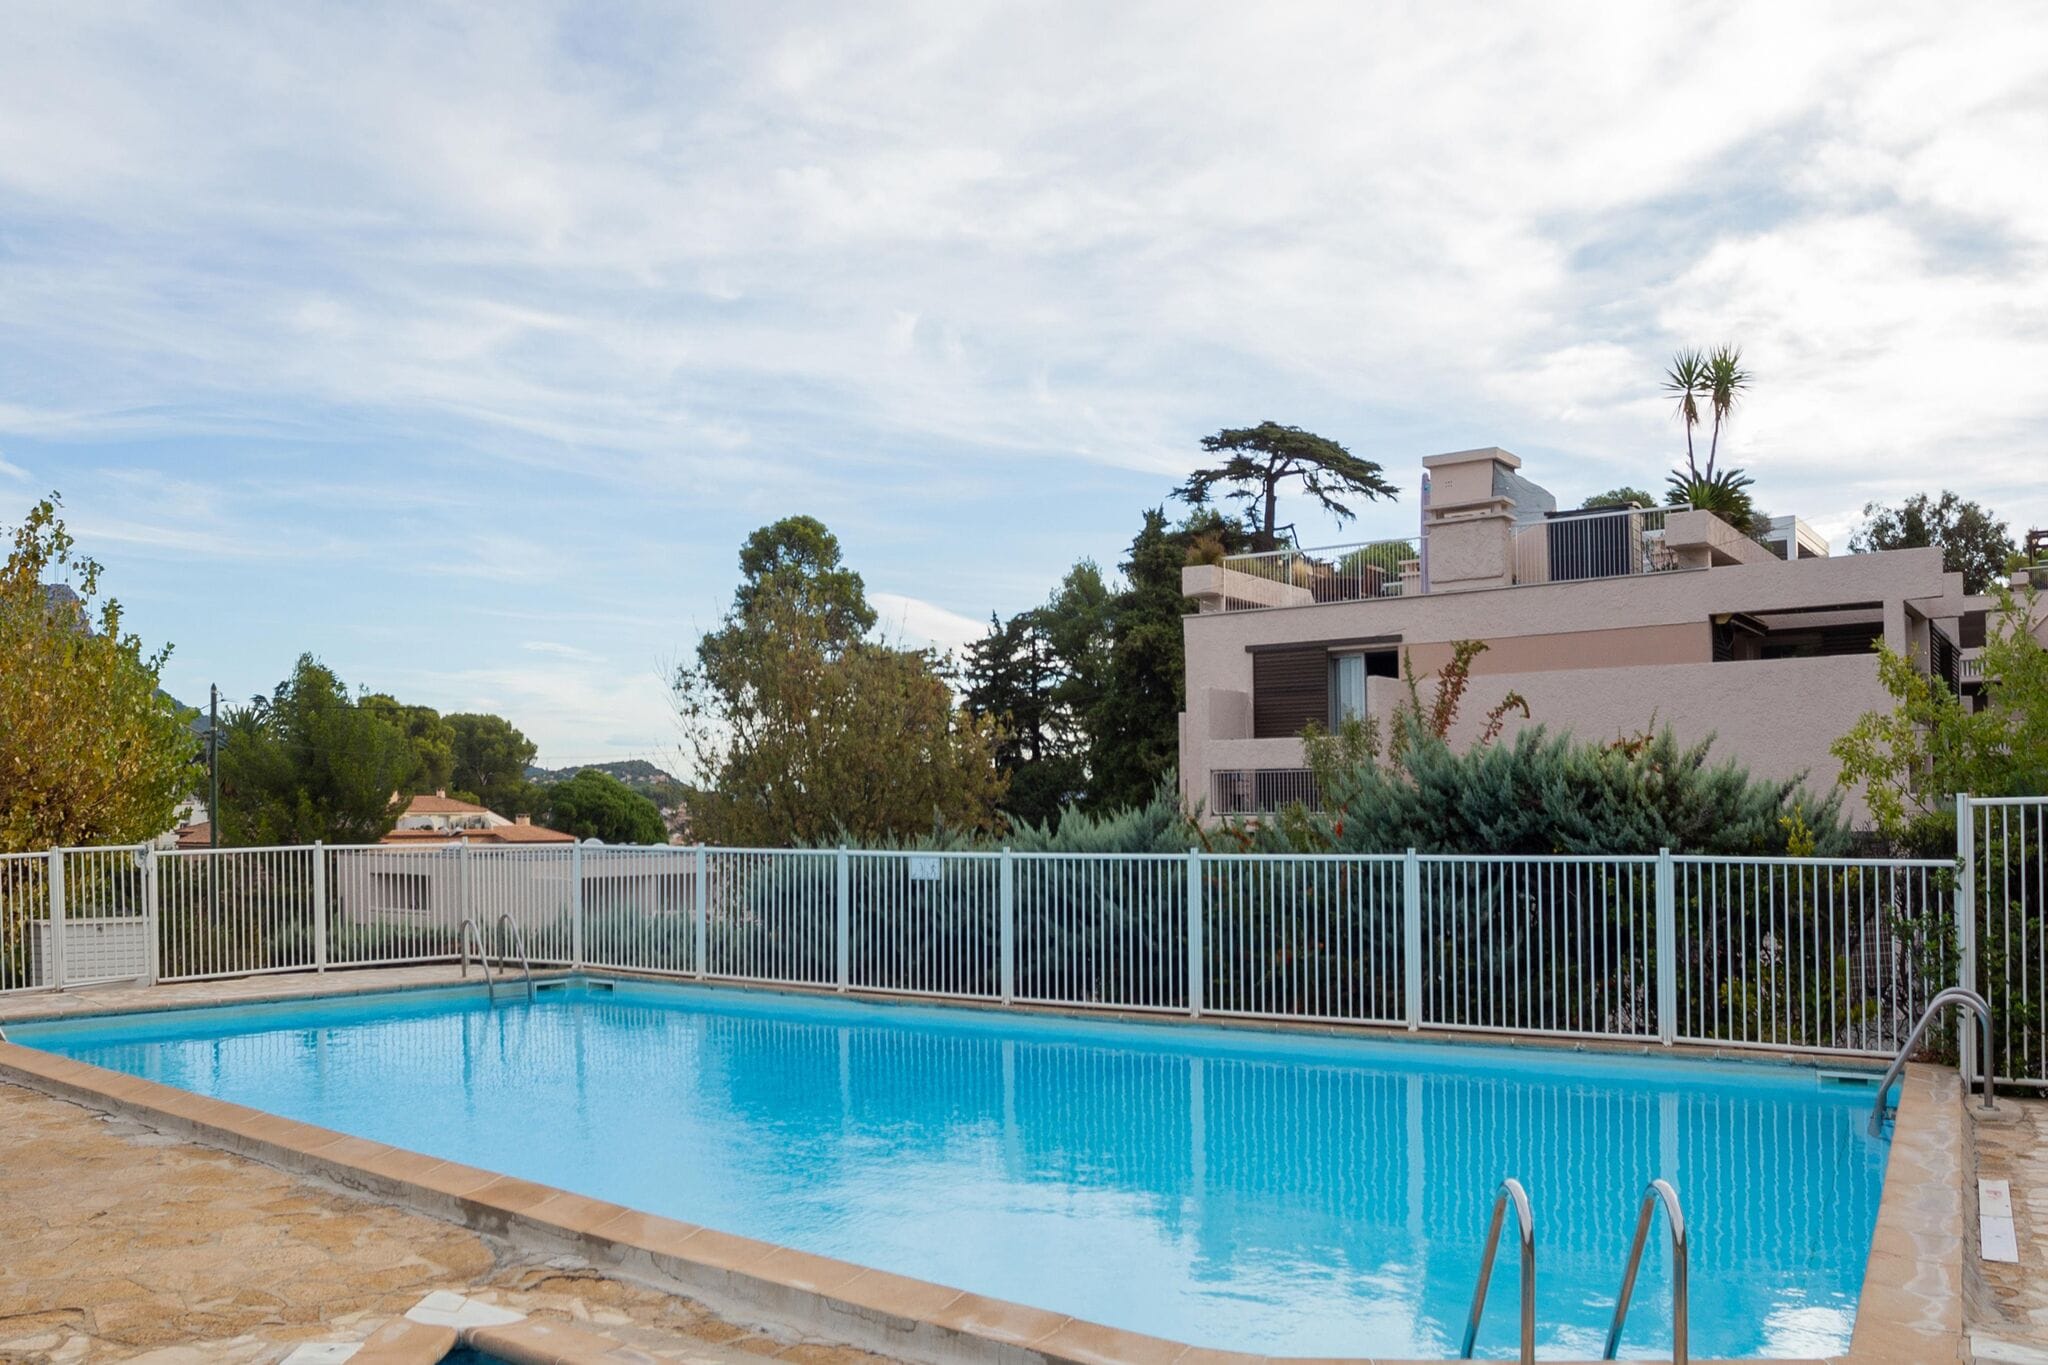 Das edele Ferienhaus mit Schwimmbad, Garten, Tennisplatz